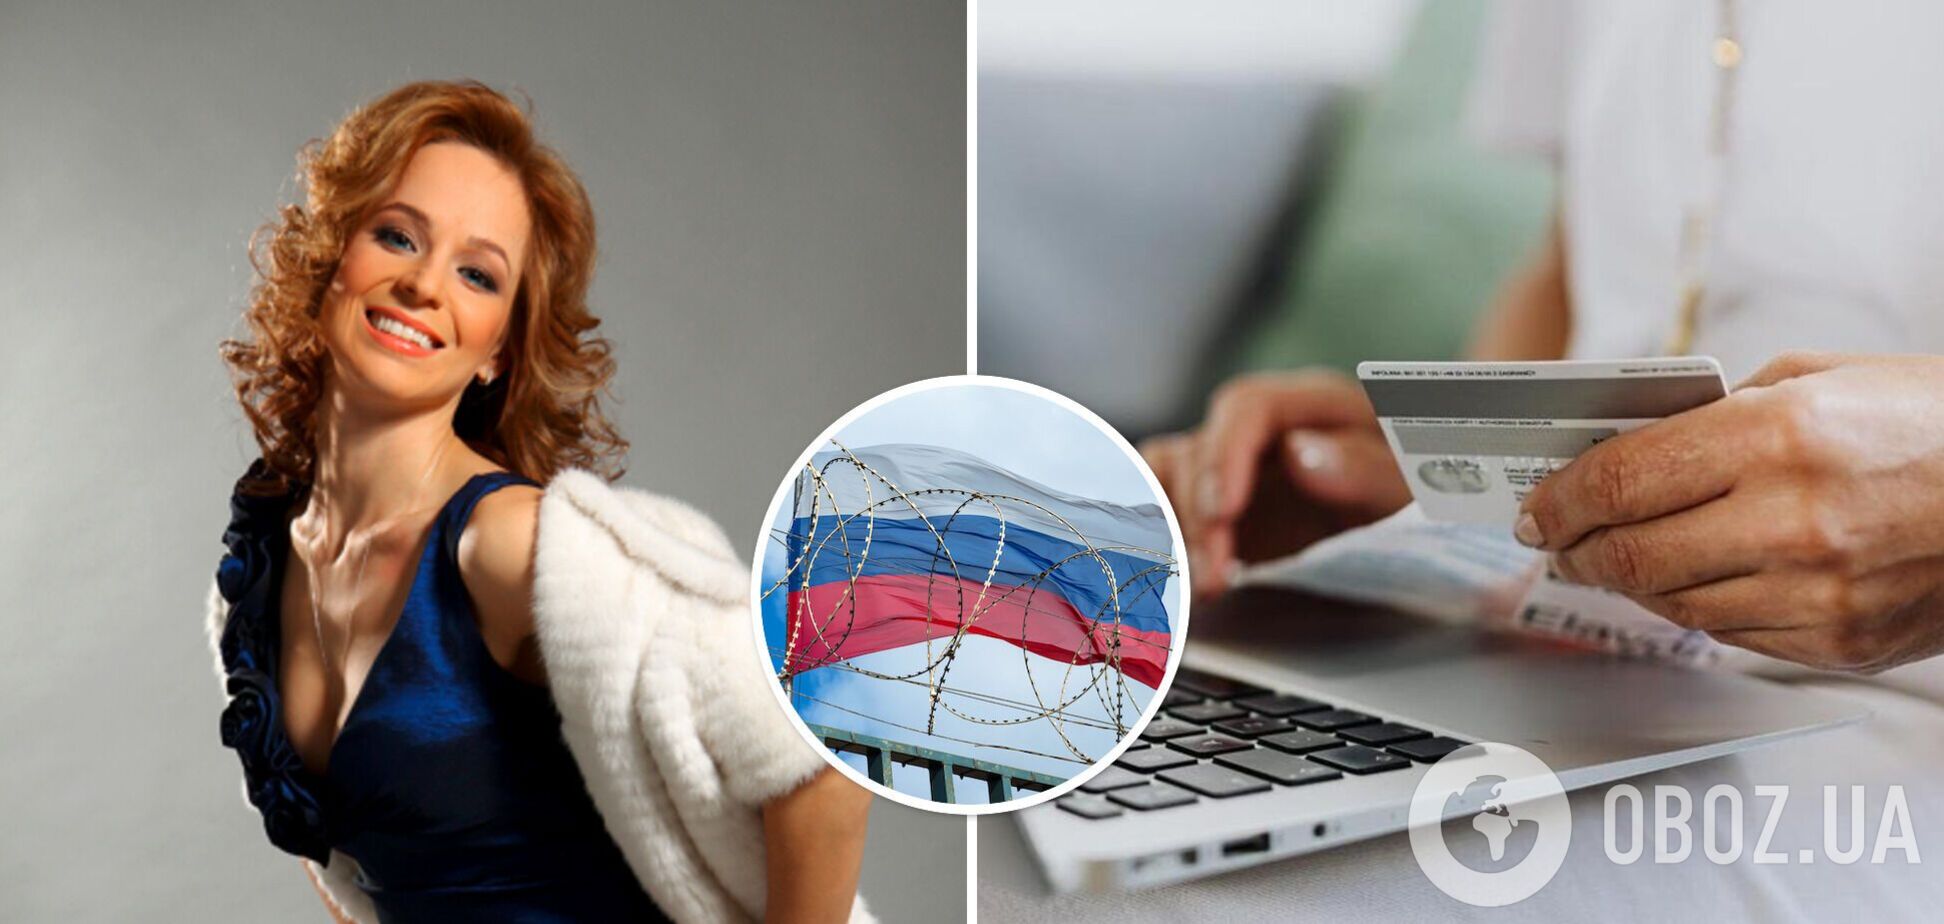 Санкции в действии: звезда '6 кадров' Ирина Медведева пожаловалась, что банк Франции заблокировал ее карту. Российских подруг не трогали